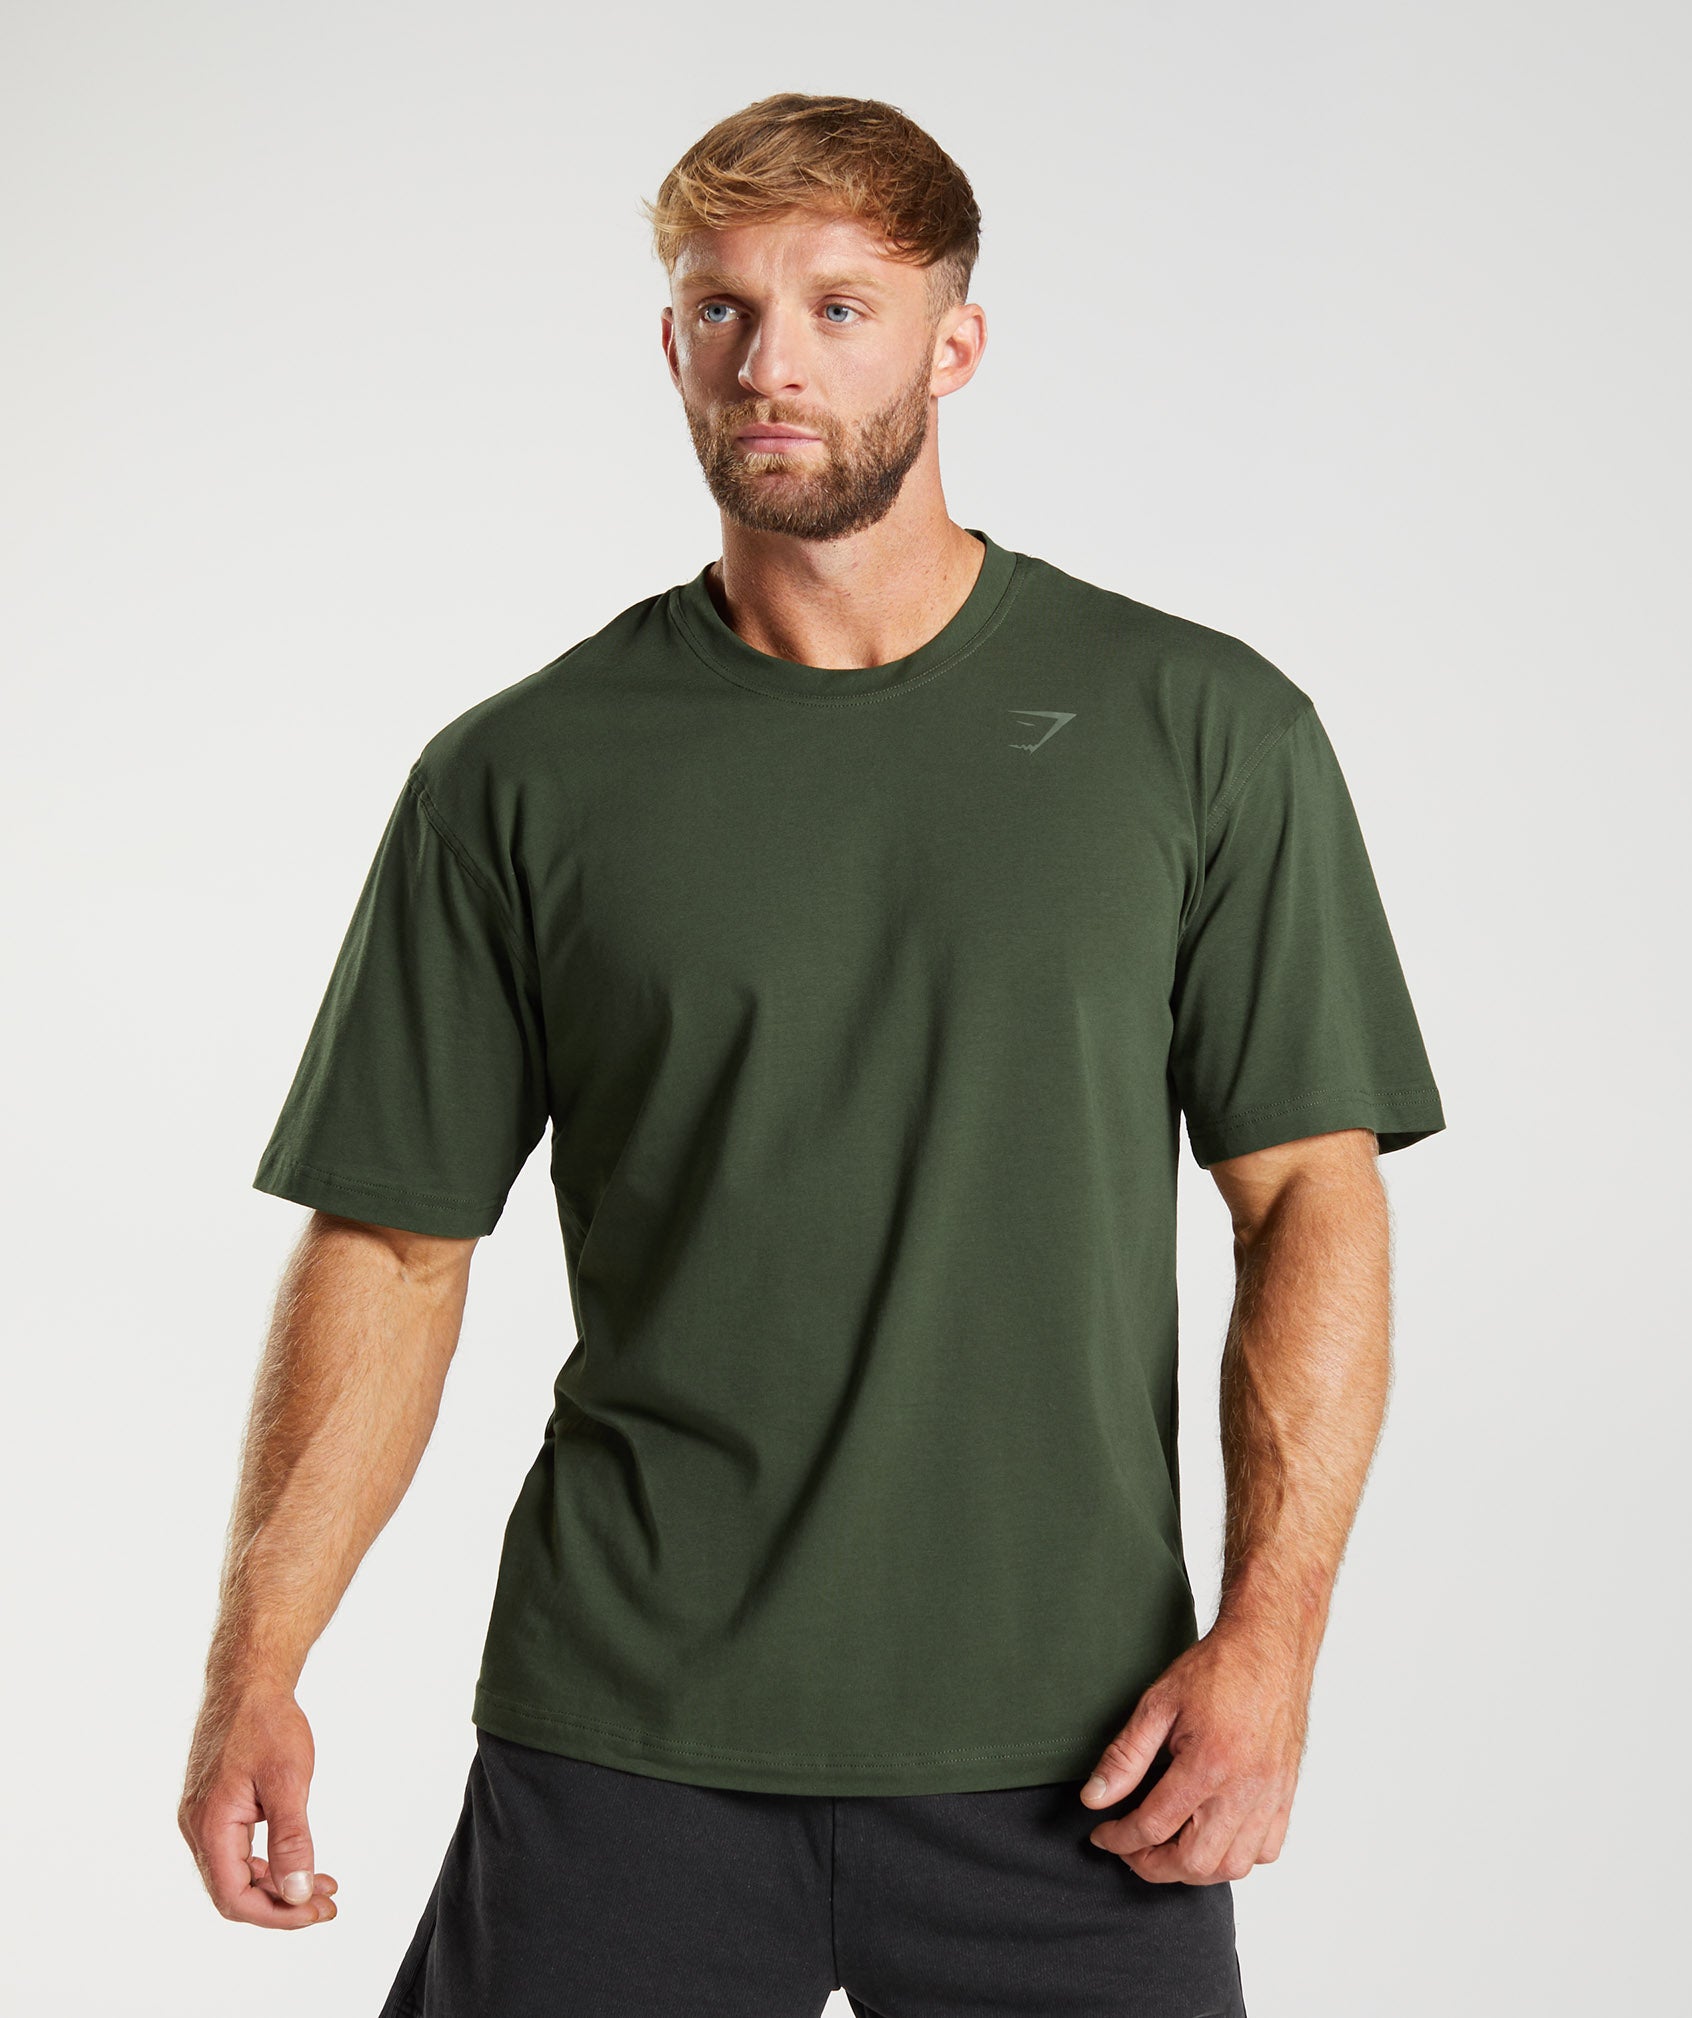 Mens T-Shirts Olive UAE Online - Gymshark Discount